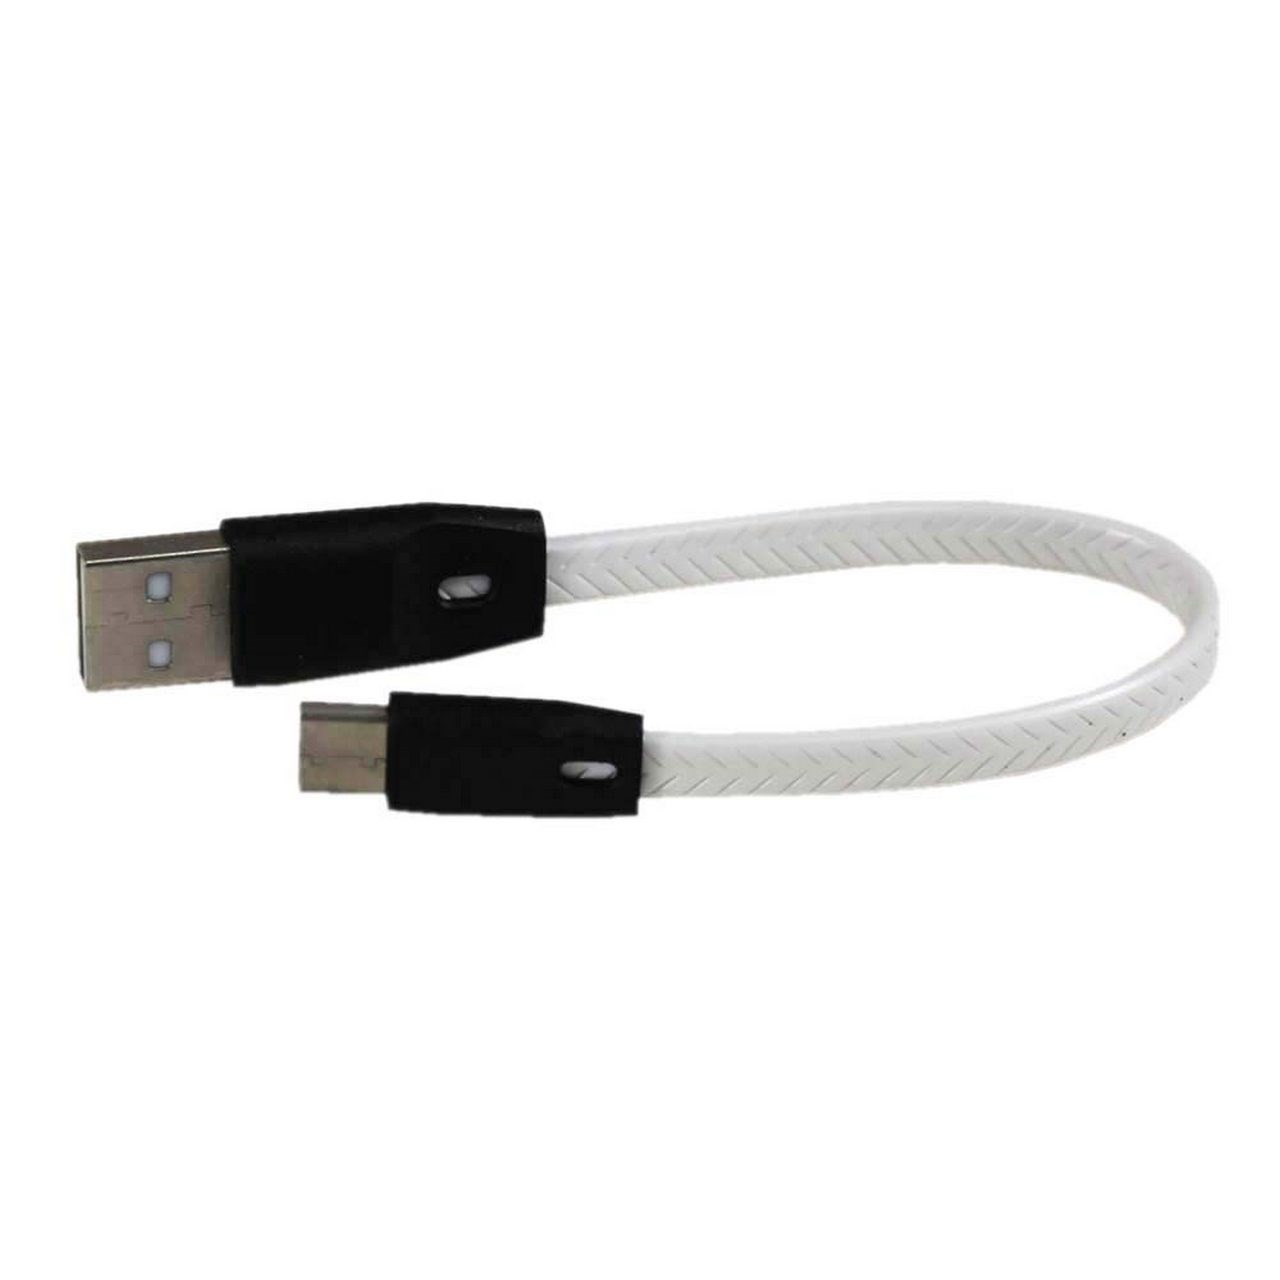 کابل تبدیل USB به type-c مدل ایکس استار به طول 25 سانتی متر